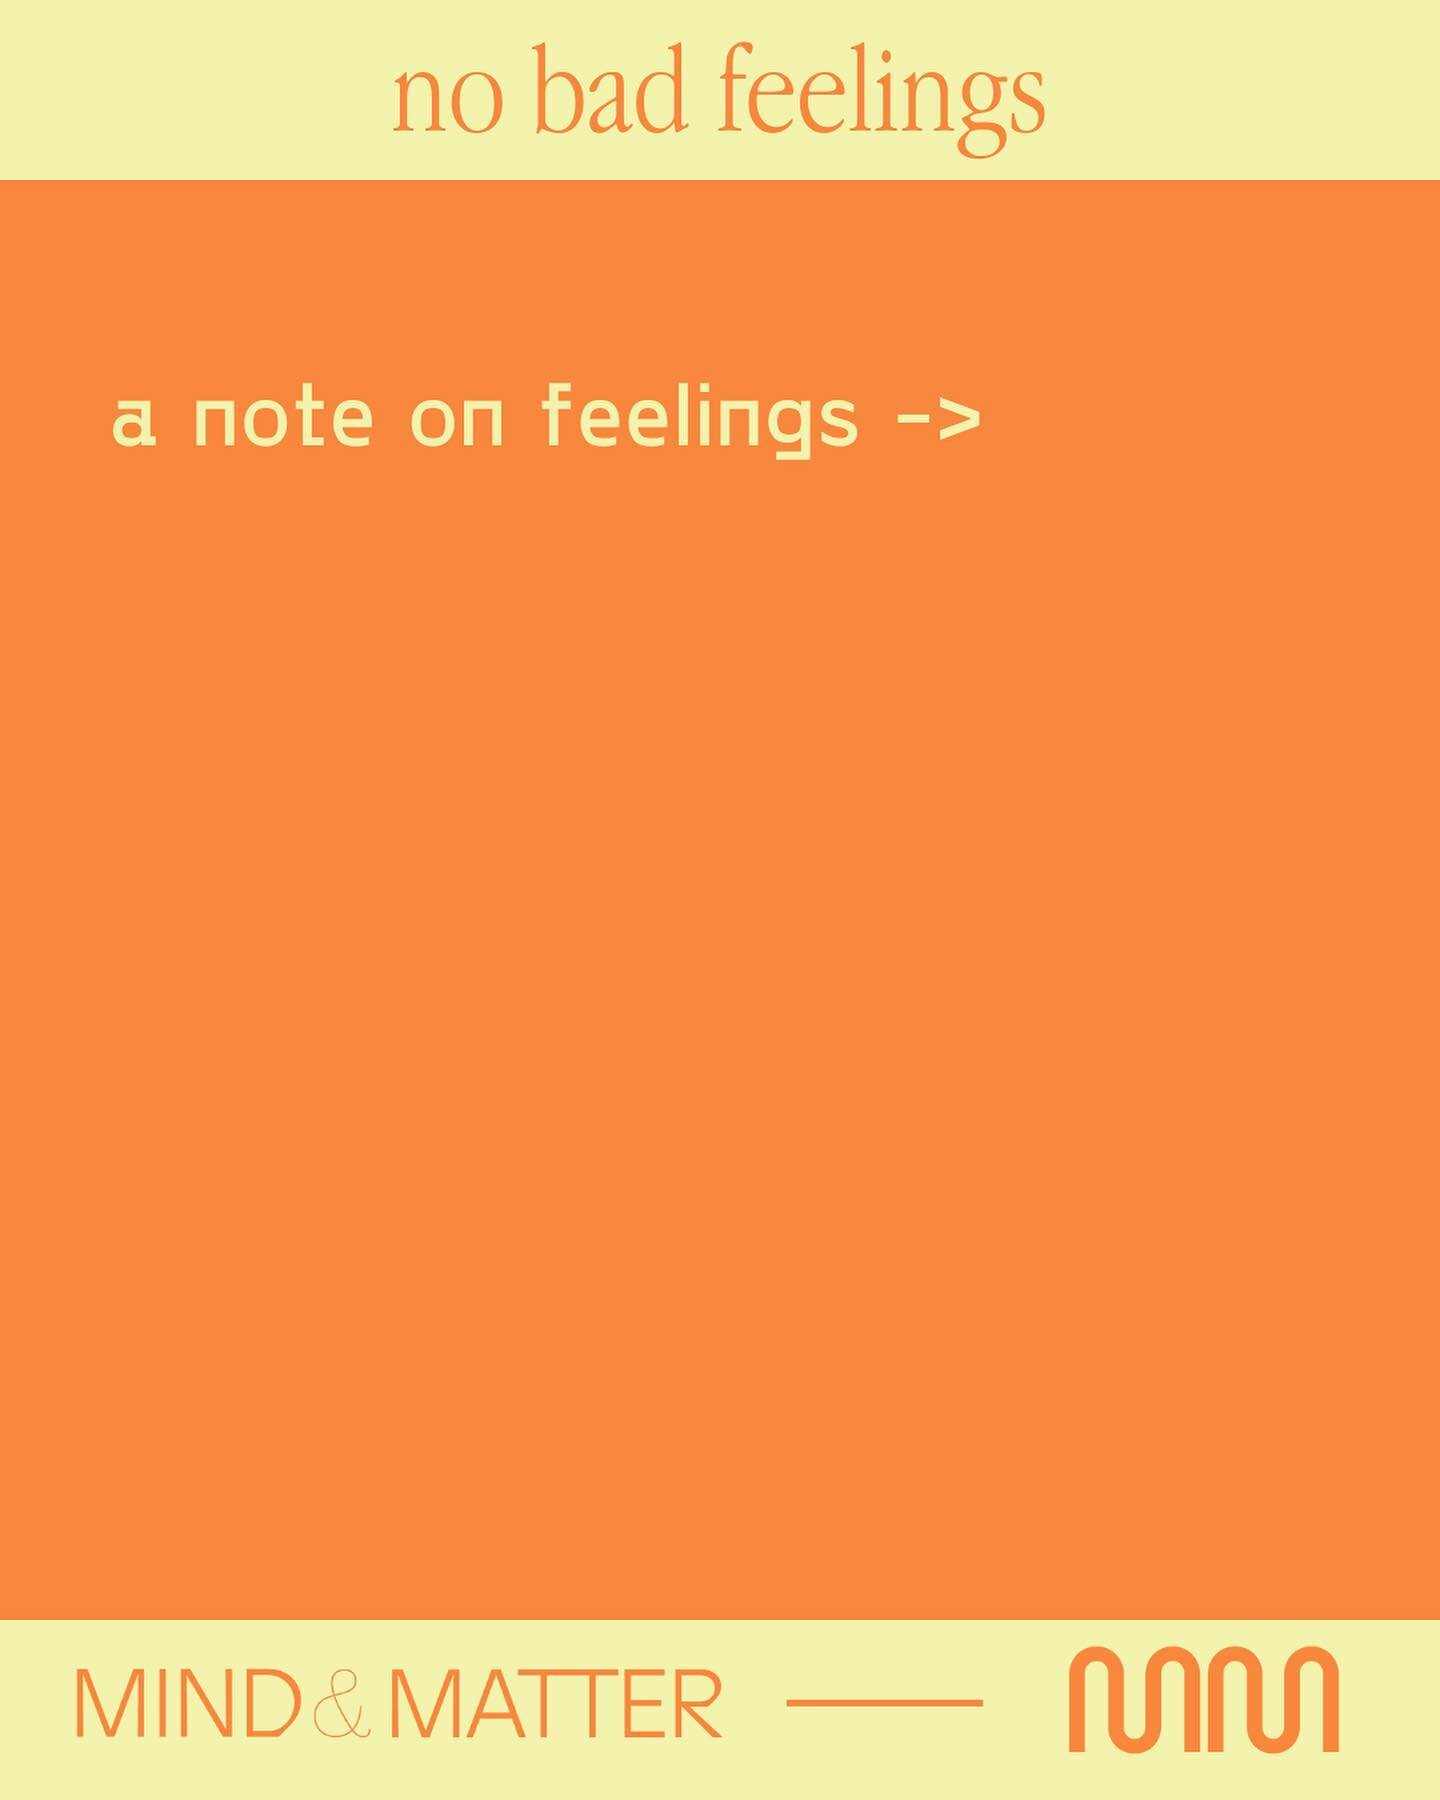 A note on feelings &mdash;&gt;